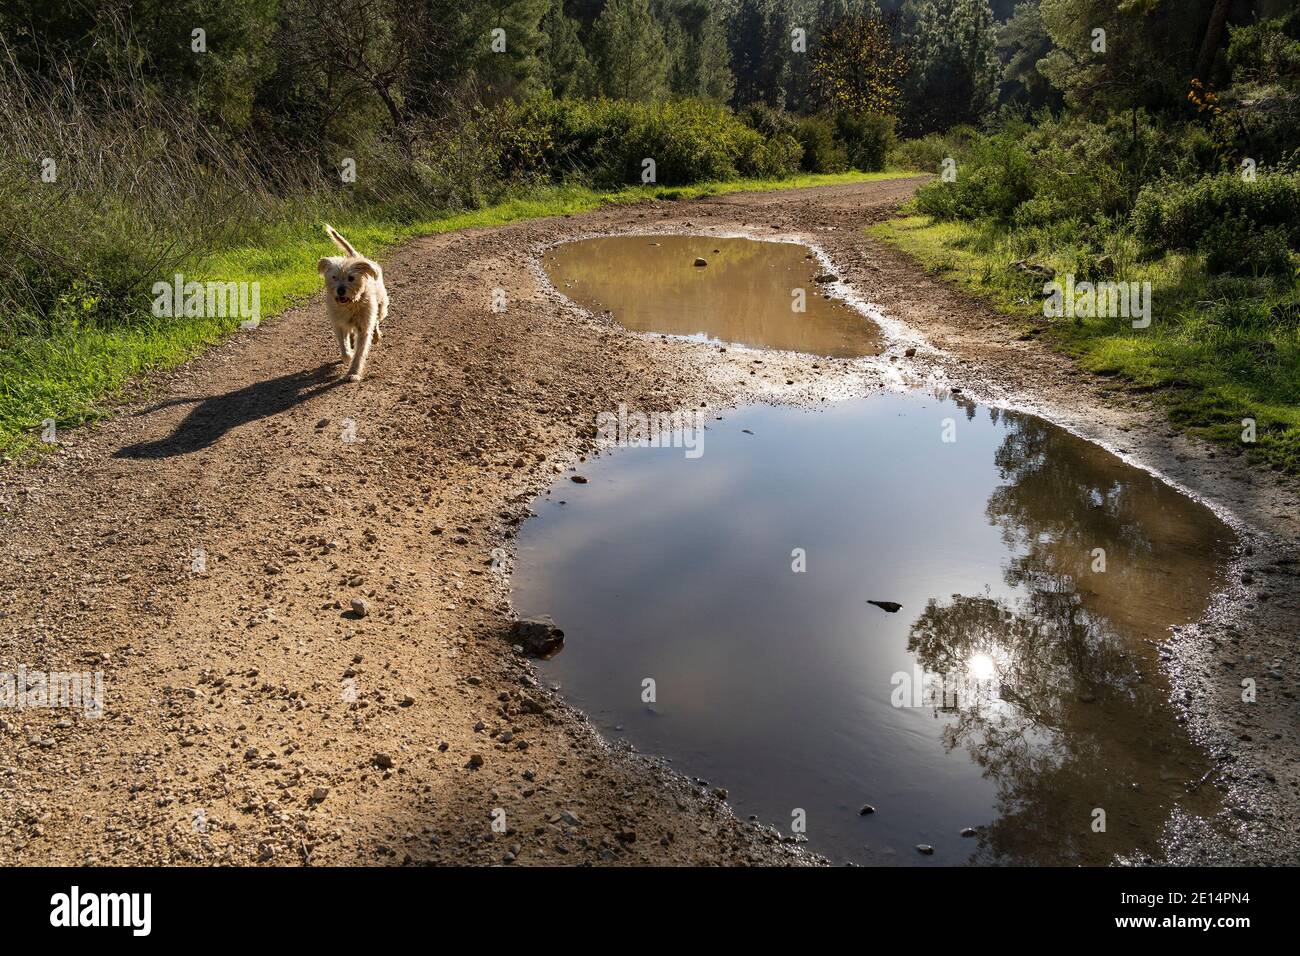 Un demi-chien doré marchant sur un chemin forestier par une belle journée d'hiver, évitant ainsi les flaques sur le chemin. Banque D'Images